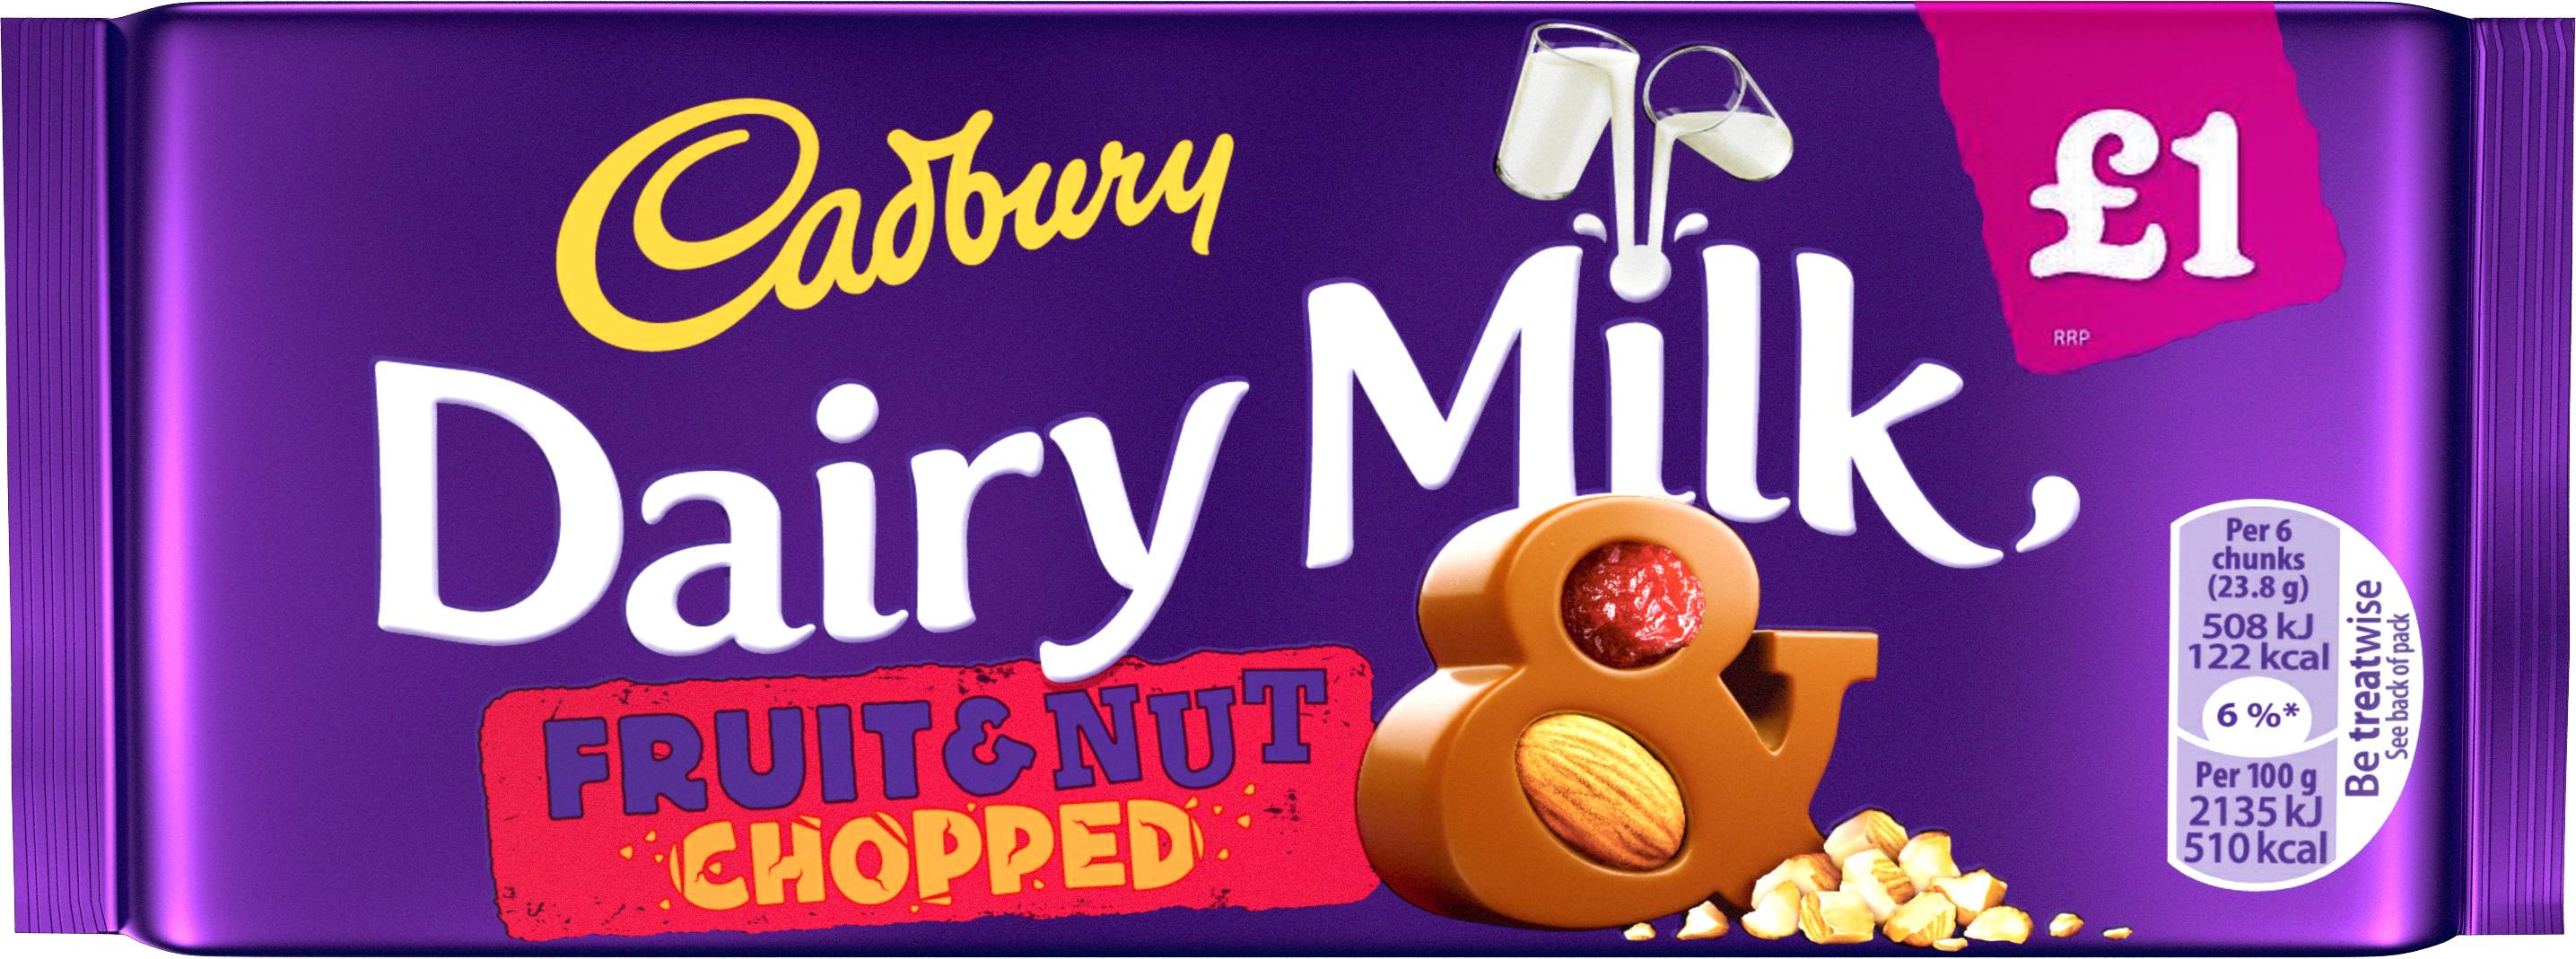 Нат энд гоу. Шоколад Cadbury Dairy Milk Fruit and nut 200 гр. Фрут энд натс. Cadbury Fruit and nut. Fruit and nut шоколад.